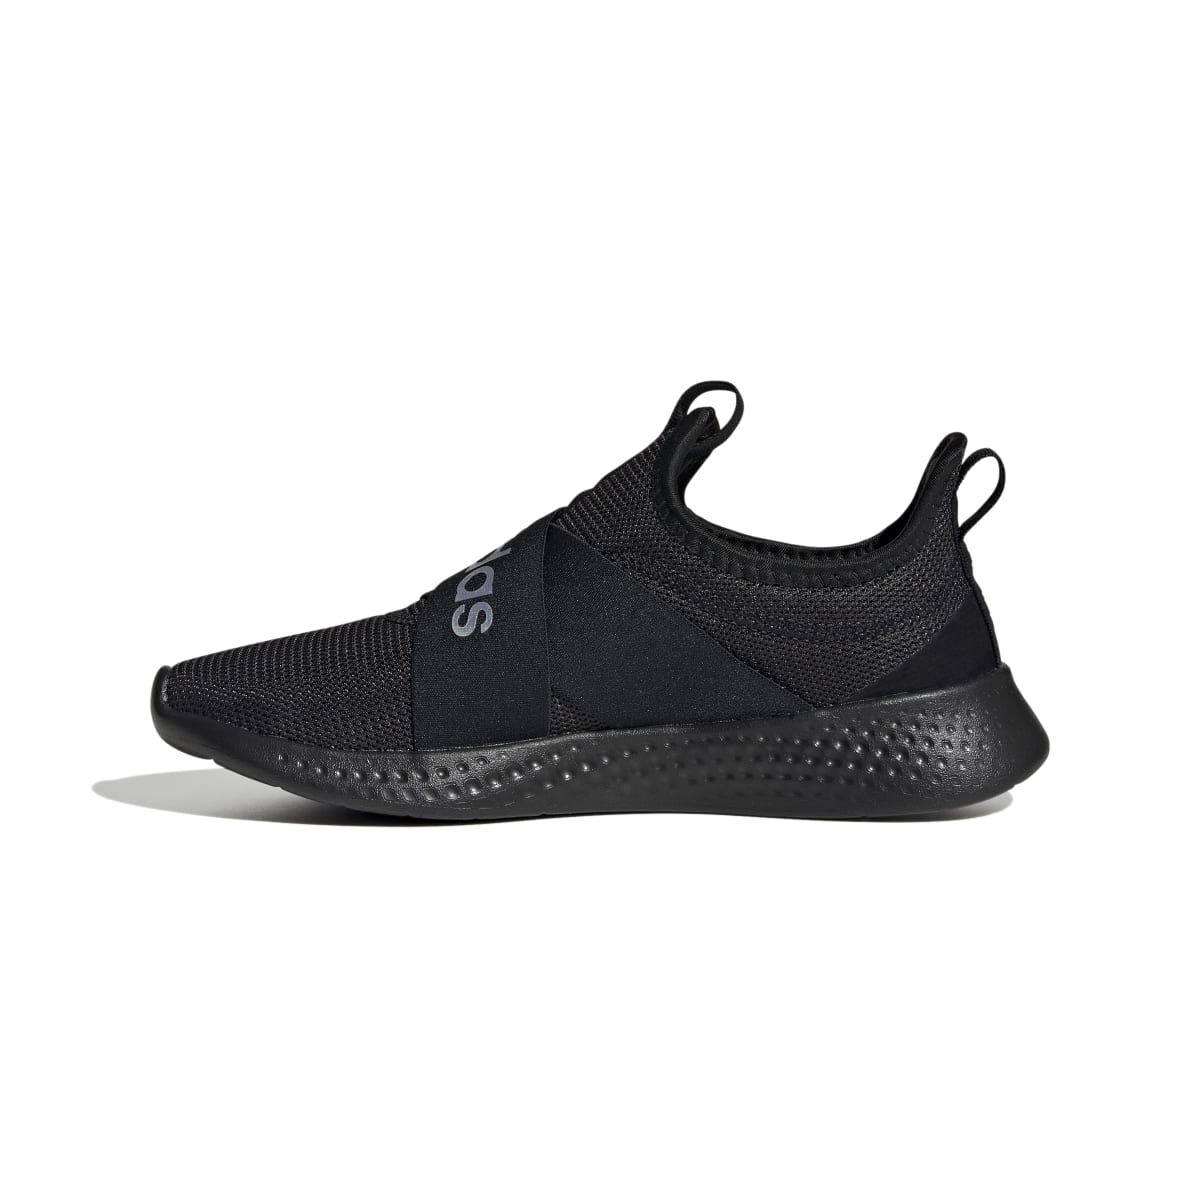 ADIDAS H02006 PUREMOTION ADAPT WMN'S (Medium) Black/Black/Iridescent Textile Running Shoes